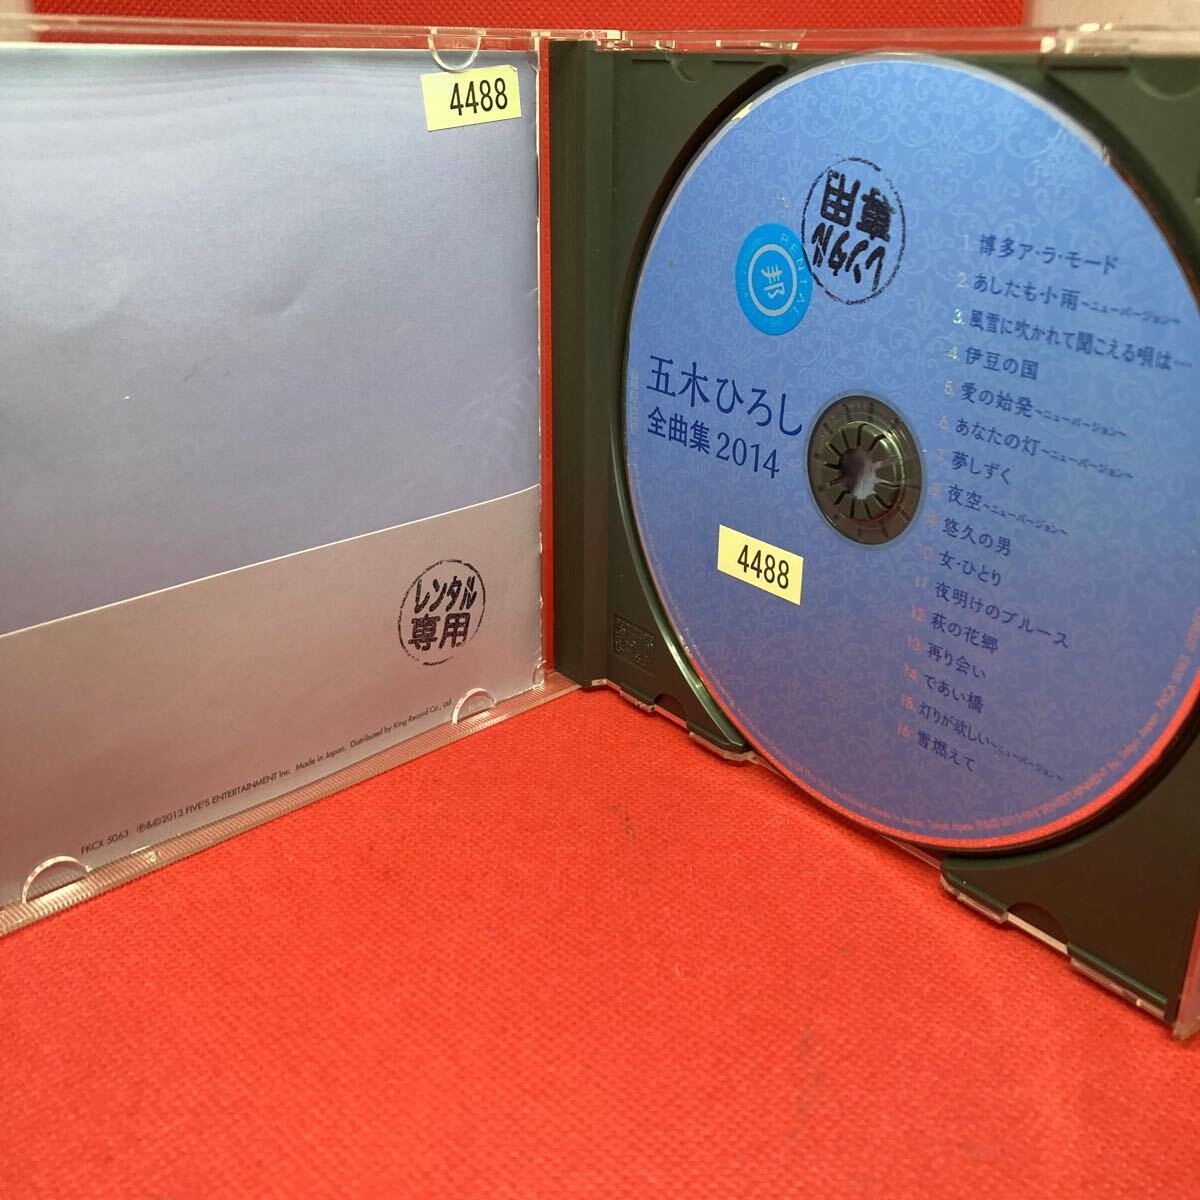 【ベスト盤】五木ひろし / 全曲集 2014 / 中古CD ※ケース新品交換済み_画像2